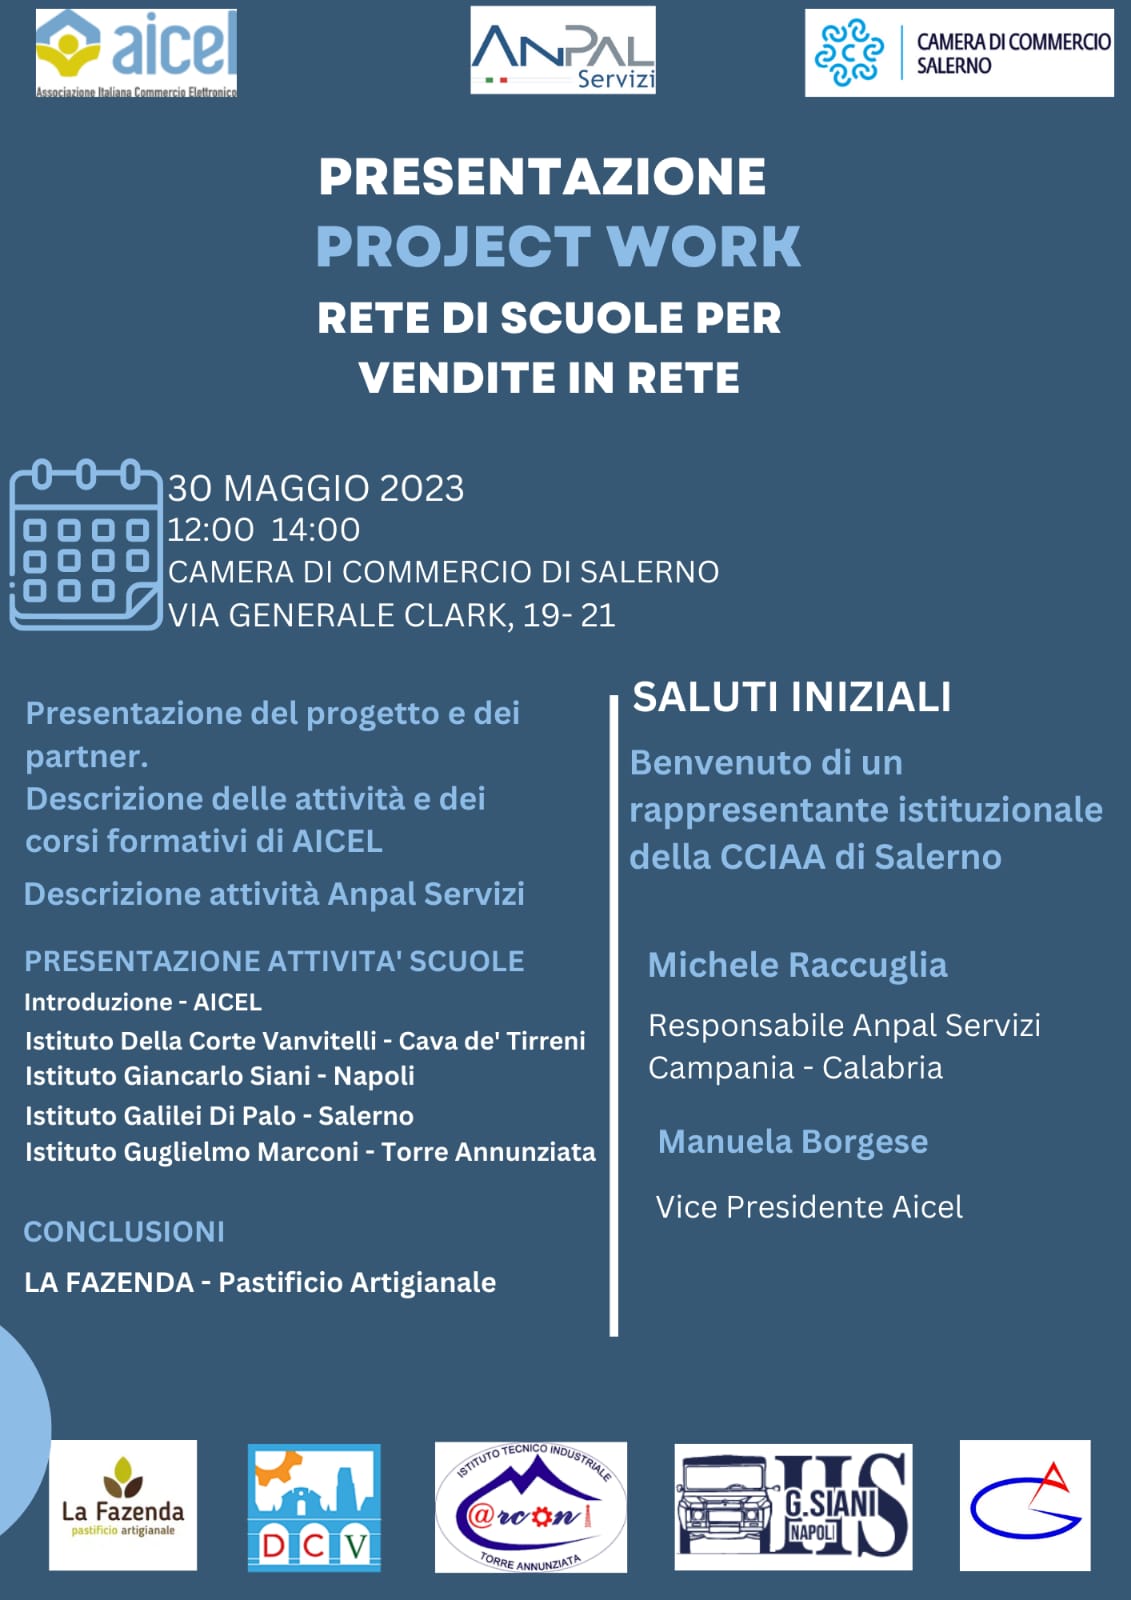 Salerno: Rete di scuole, presentazione progetto di Aicel e Anpal Servizi  